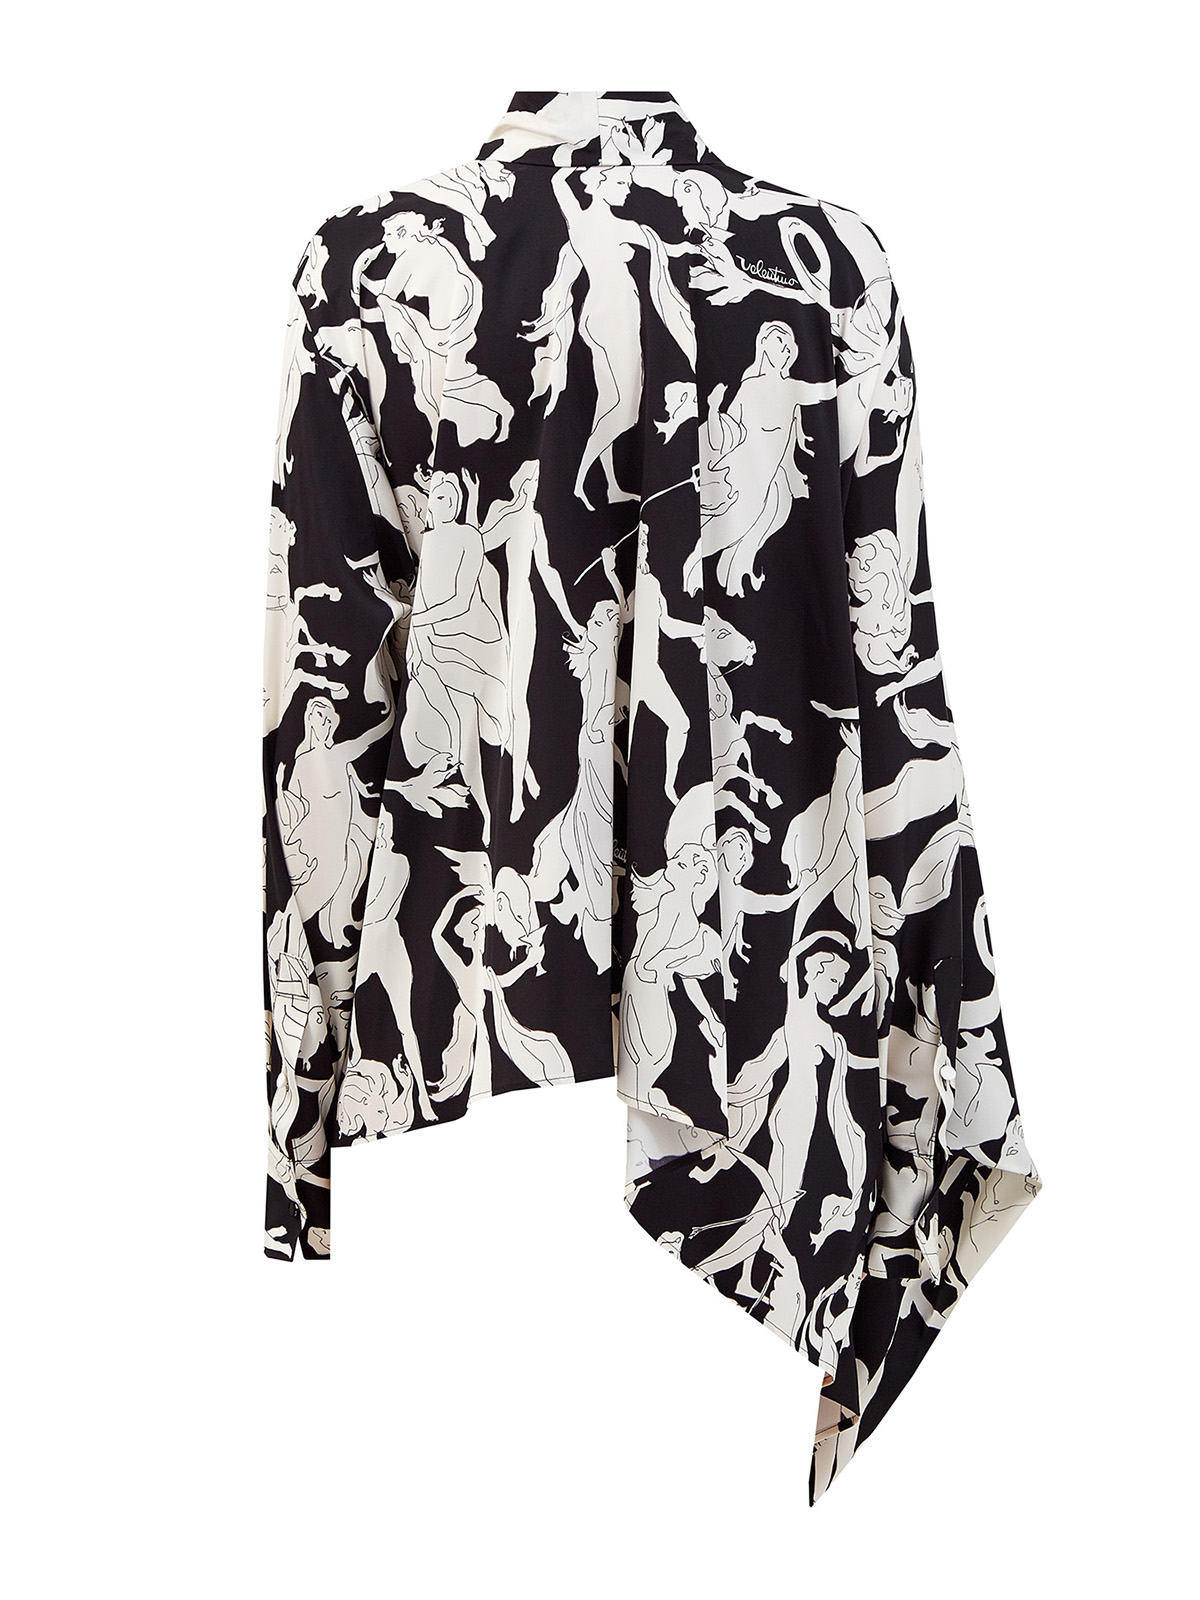 Асимметричная блуза Dancing Gods из шелкового твила VALENTINO, цвет черно-белый, размер 40;44 - фото 2